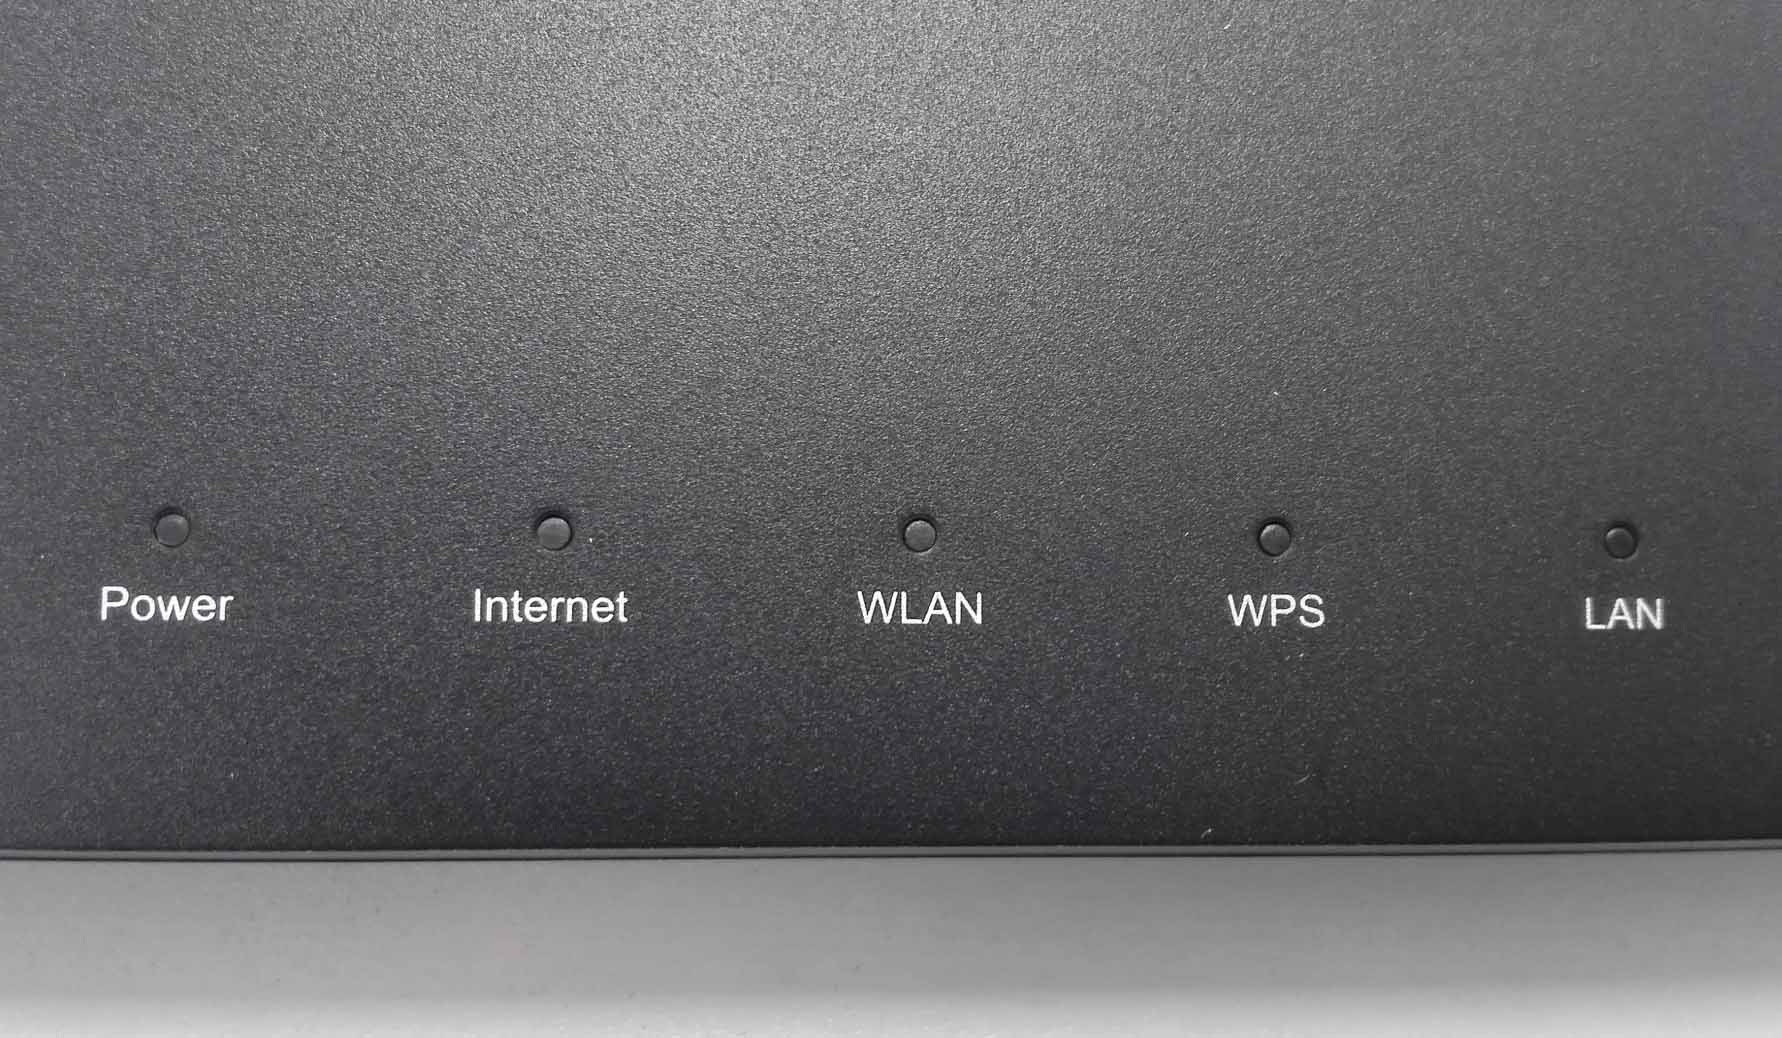 Как Зайти в Личный Кабинет 192.168.8.1 - Подключить USB Модем Huawei и Настроить по WiFi Интернет 3G-4G (LTE) Мегафон, Билайн, МТС, Теле 2 - ВайФайка.РУ